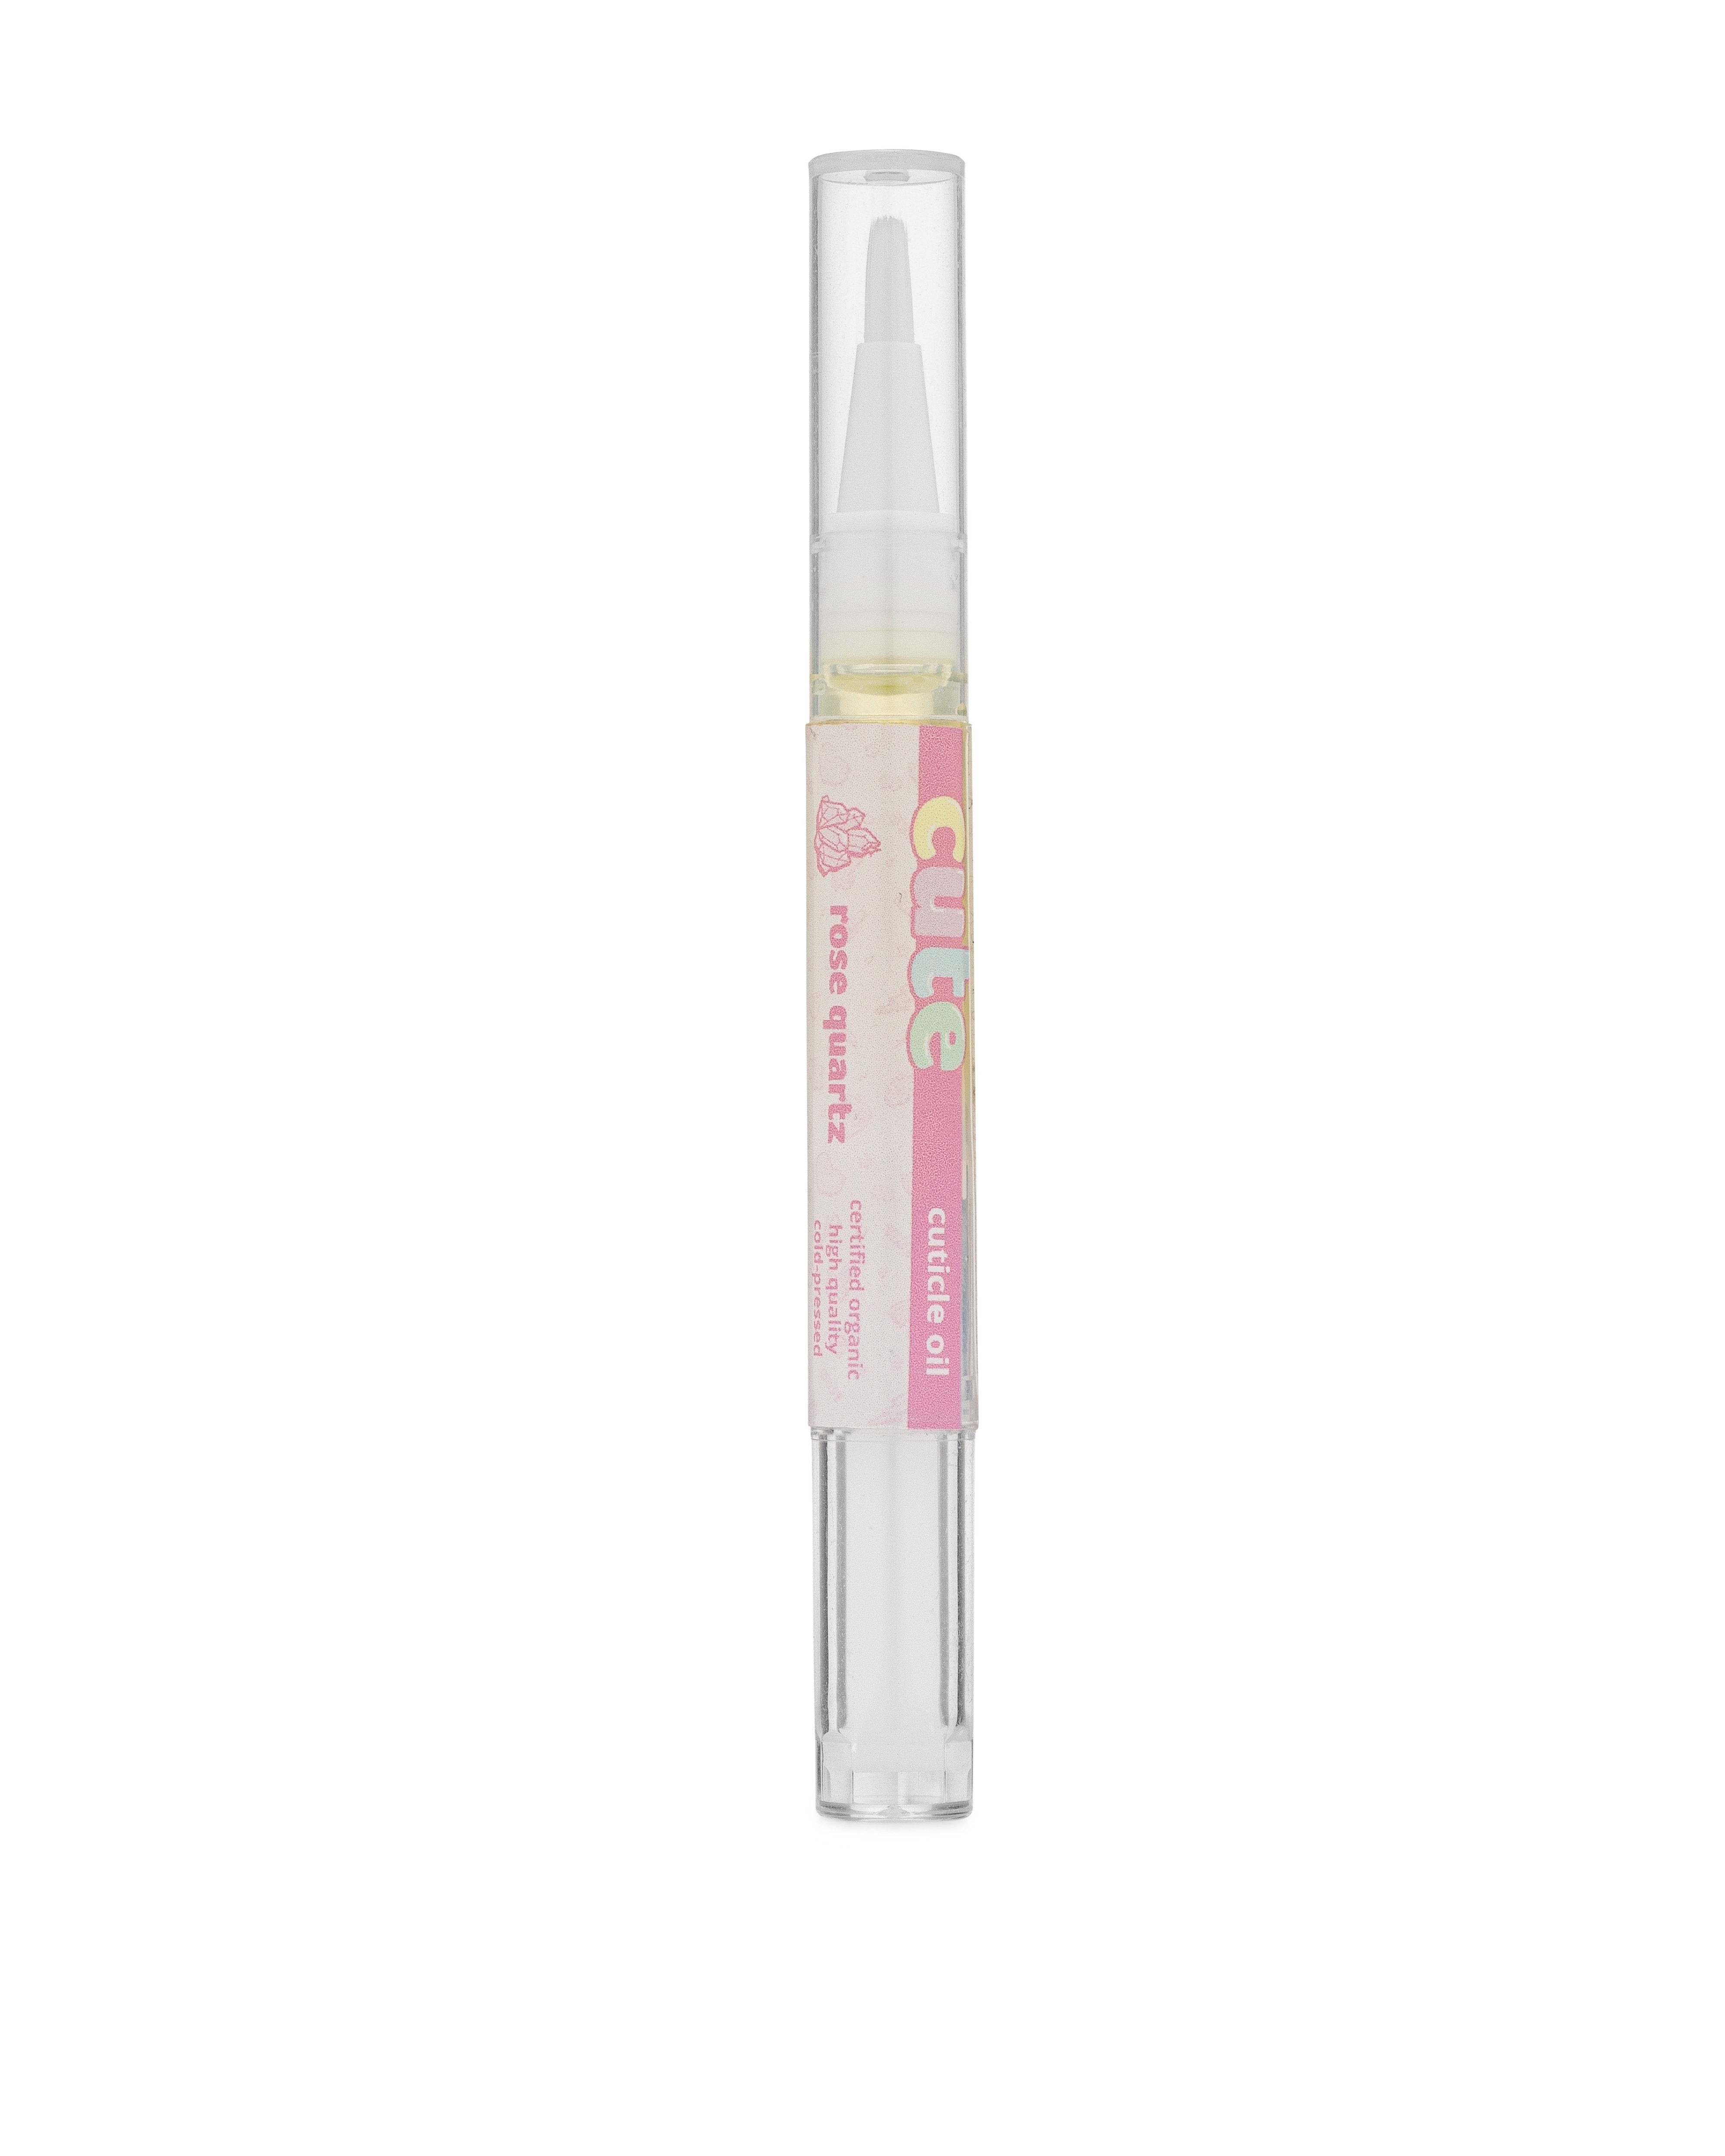 Rose Quartz cuticle oil pen